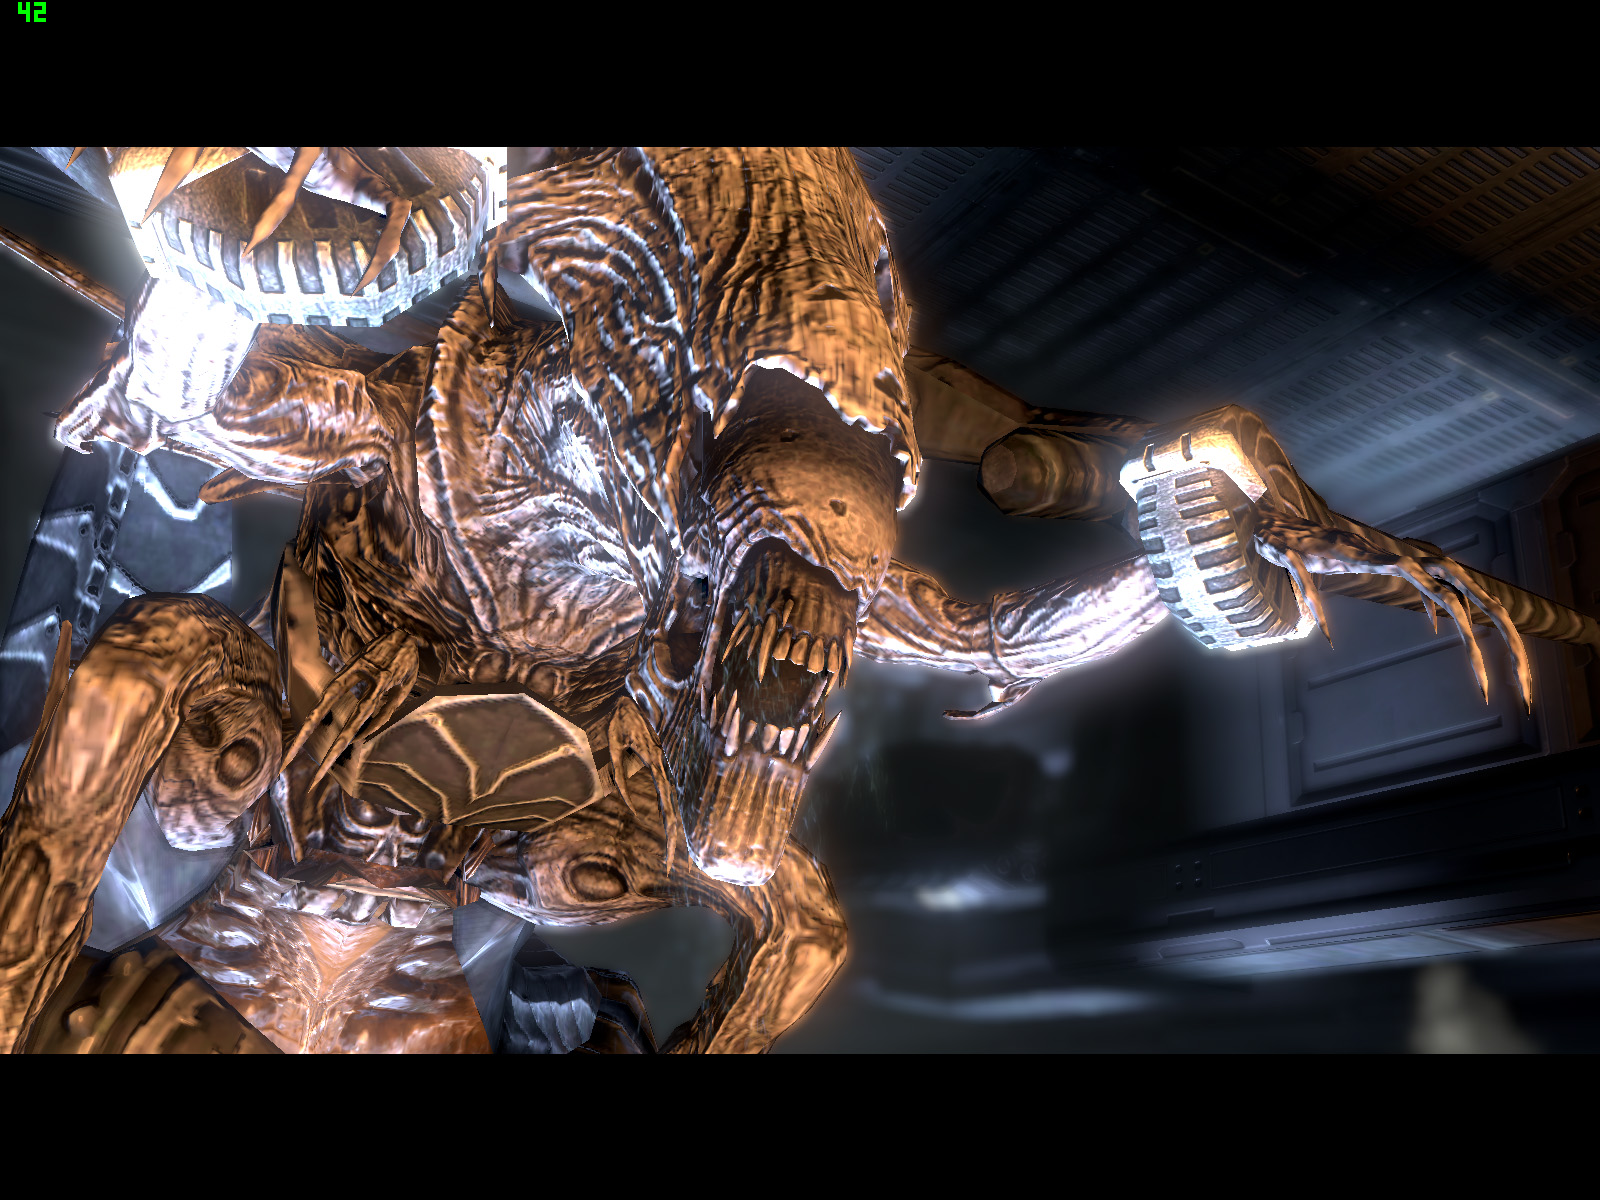 宇宙一強いのは誰だ 今週の 海外ゲーム四天王 は Aliens Vs Predator で宇宙最強決定戦